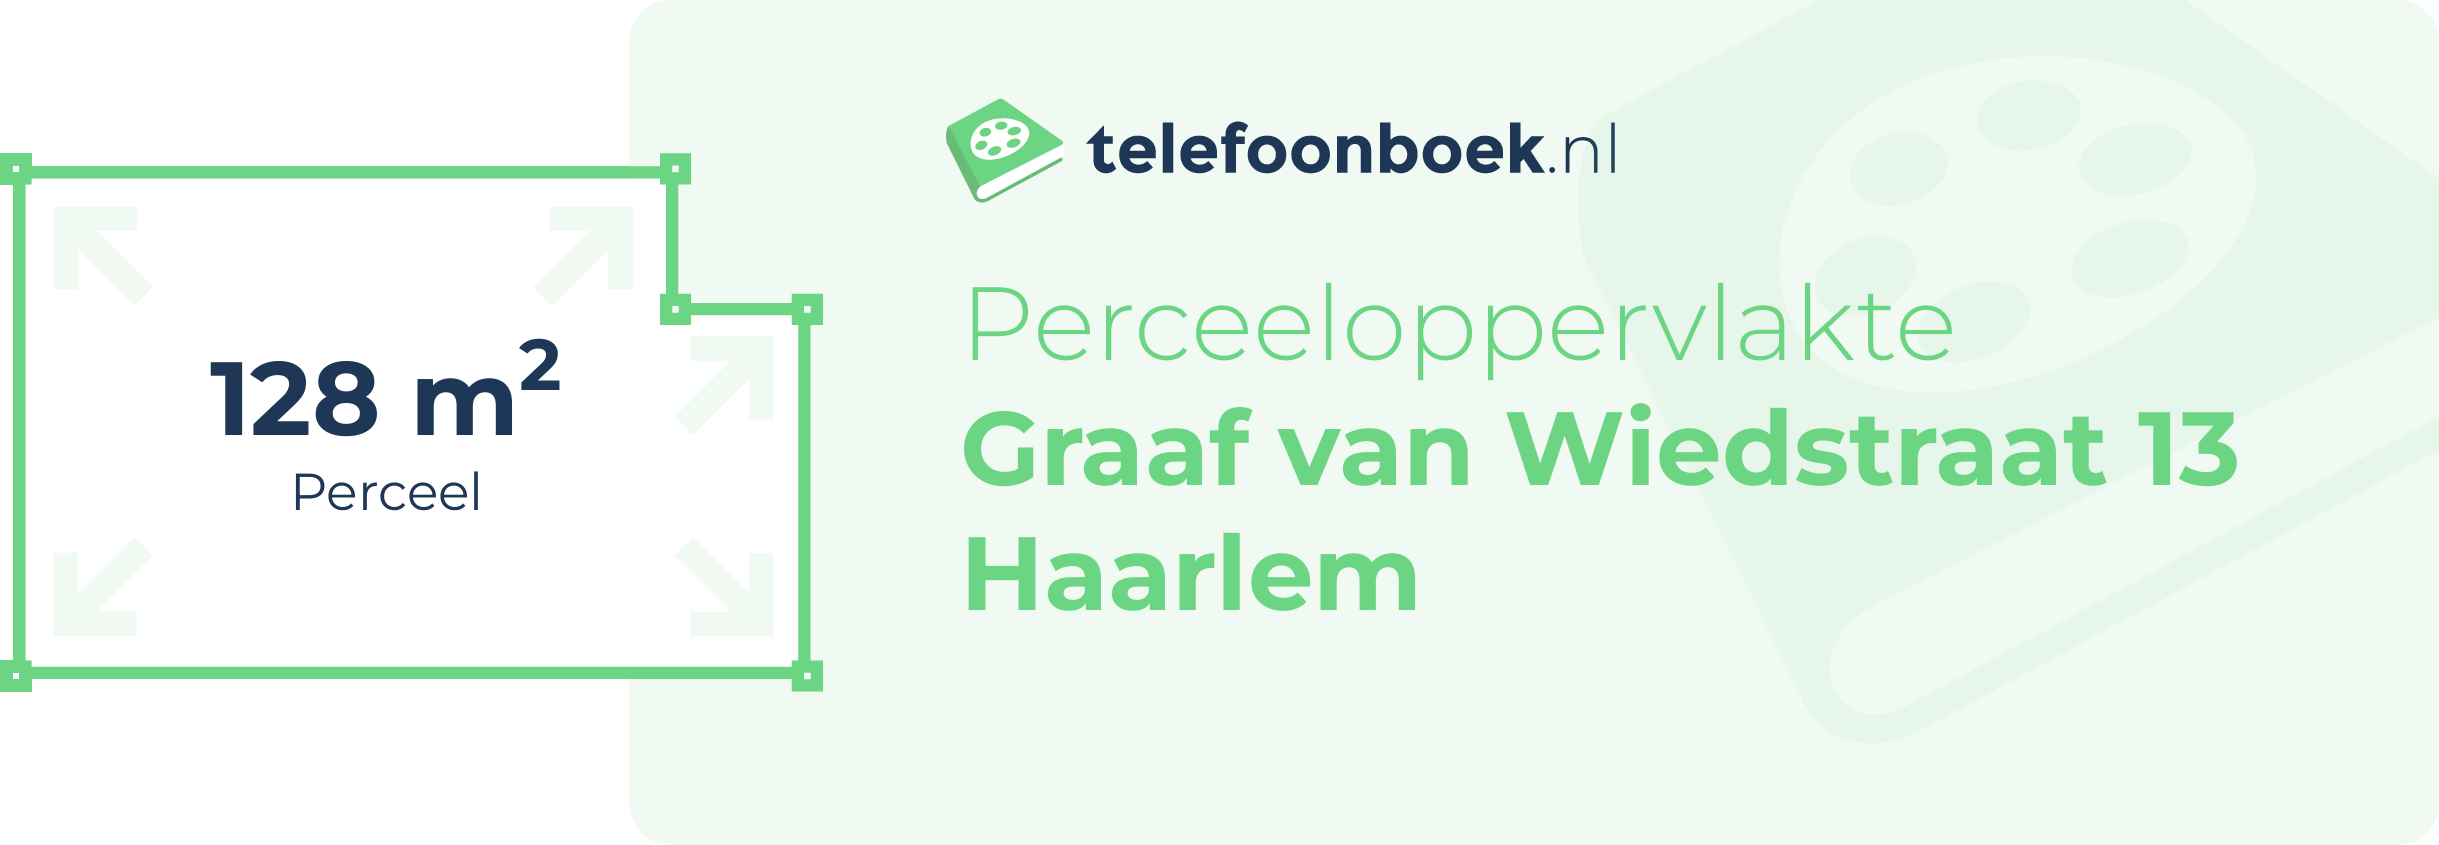 Perceeloppervlakte Graaf Van Wiedstraat 13 Haarlem